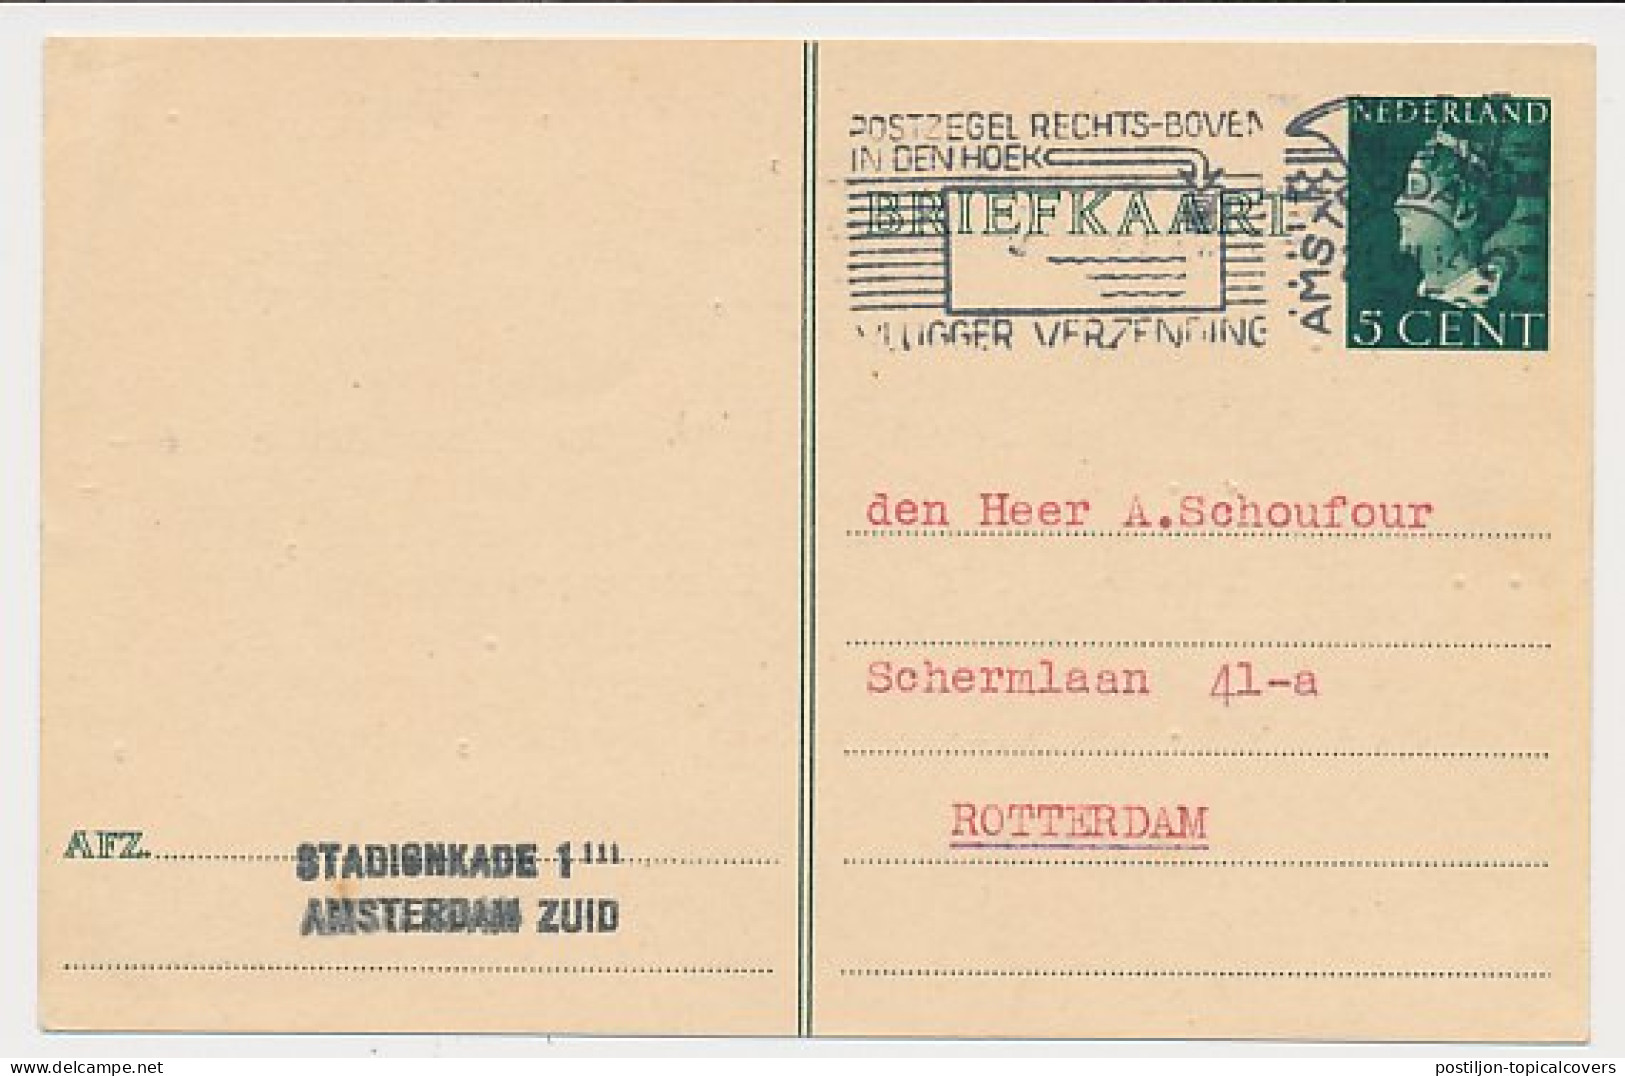 Briefkaart G. 279 Amsterdam - Rotterdam 1945 - Entiers Postaux